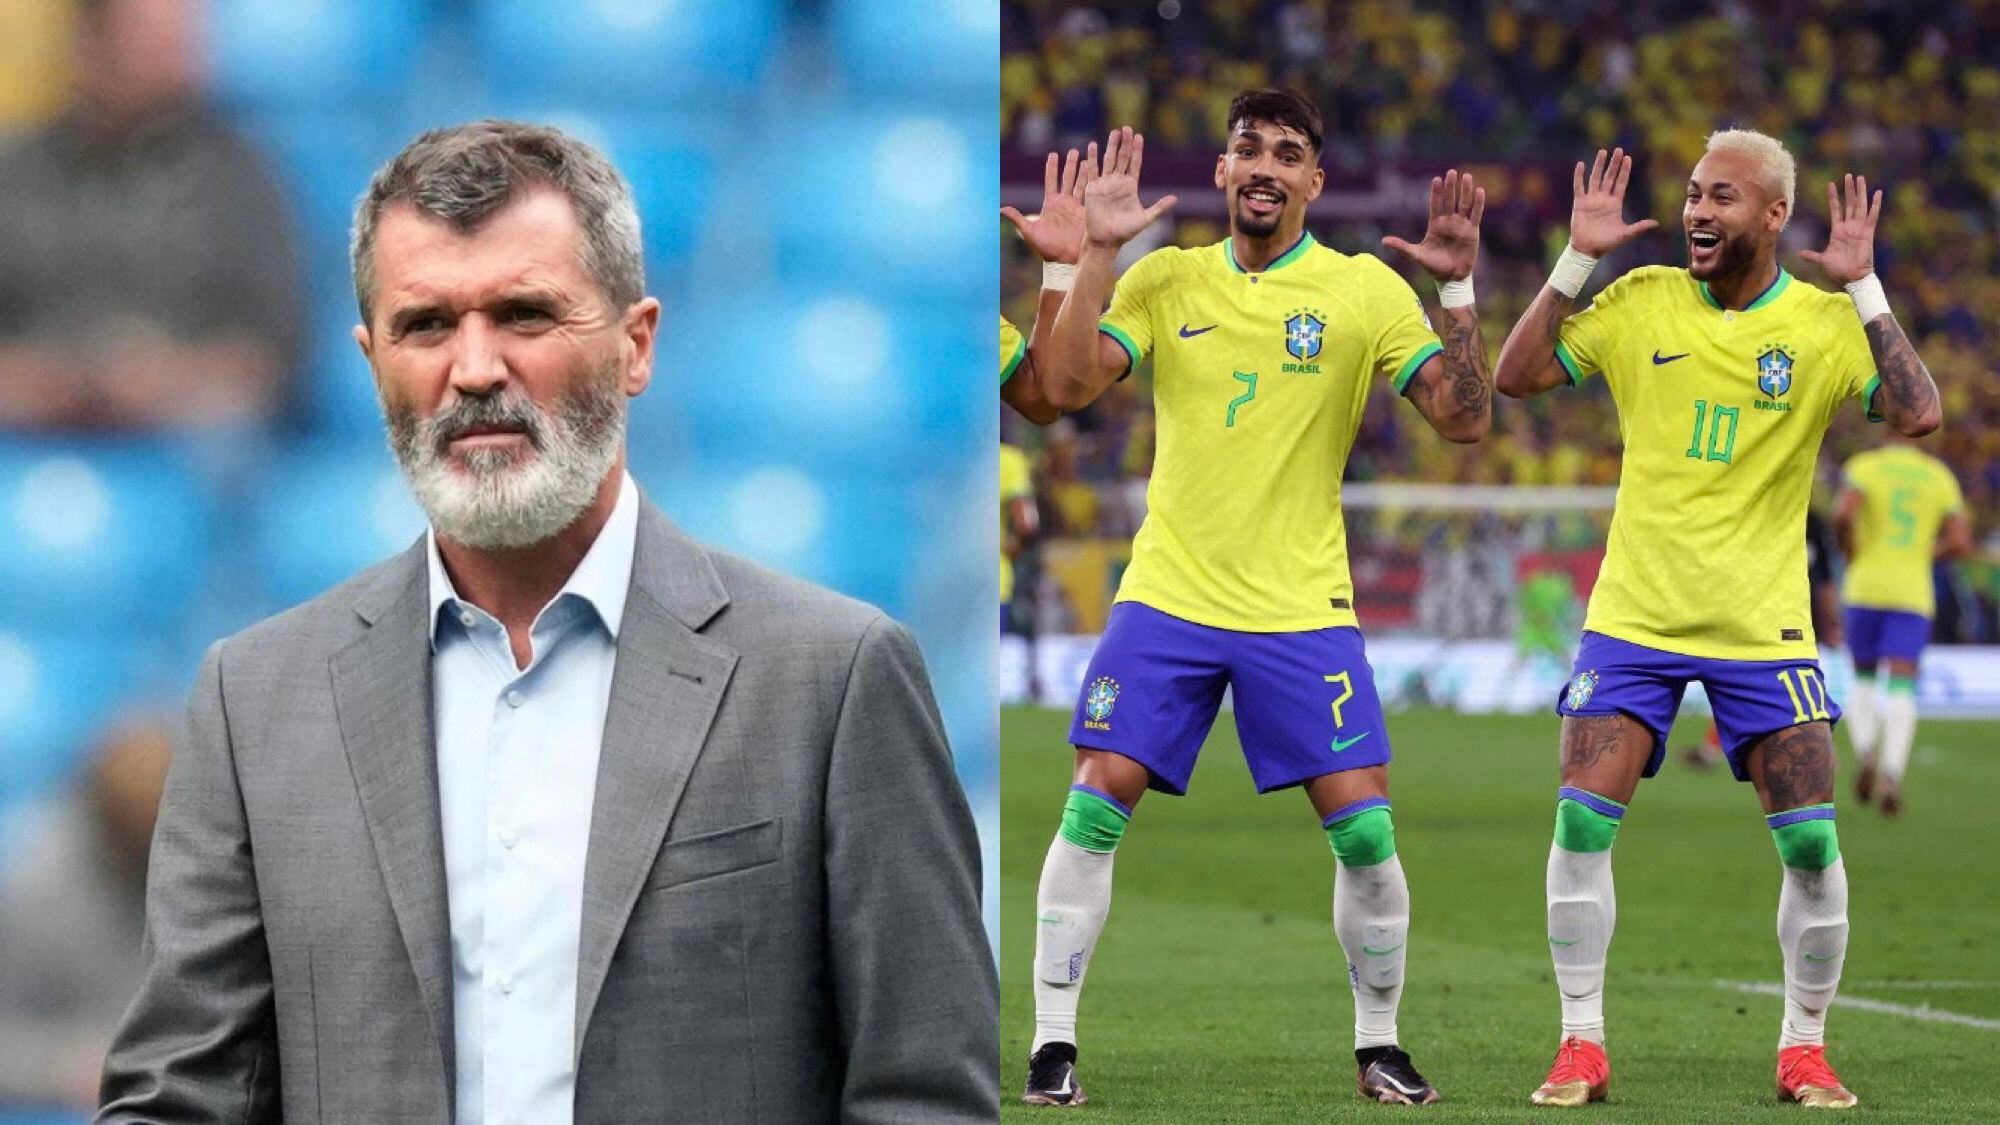 Los bailes de los jugadores de Brasil generaron desde elogios hasta críticas, las más polémicas, sin duda, fueron emitidas por el el excapitán del Manchester United Roy Keane.